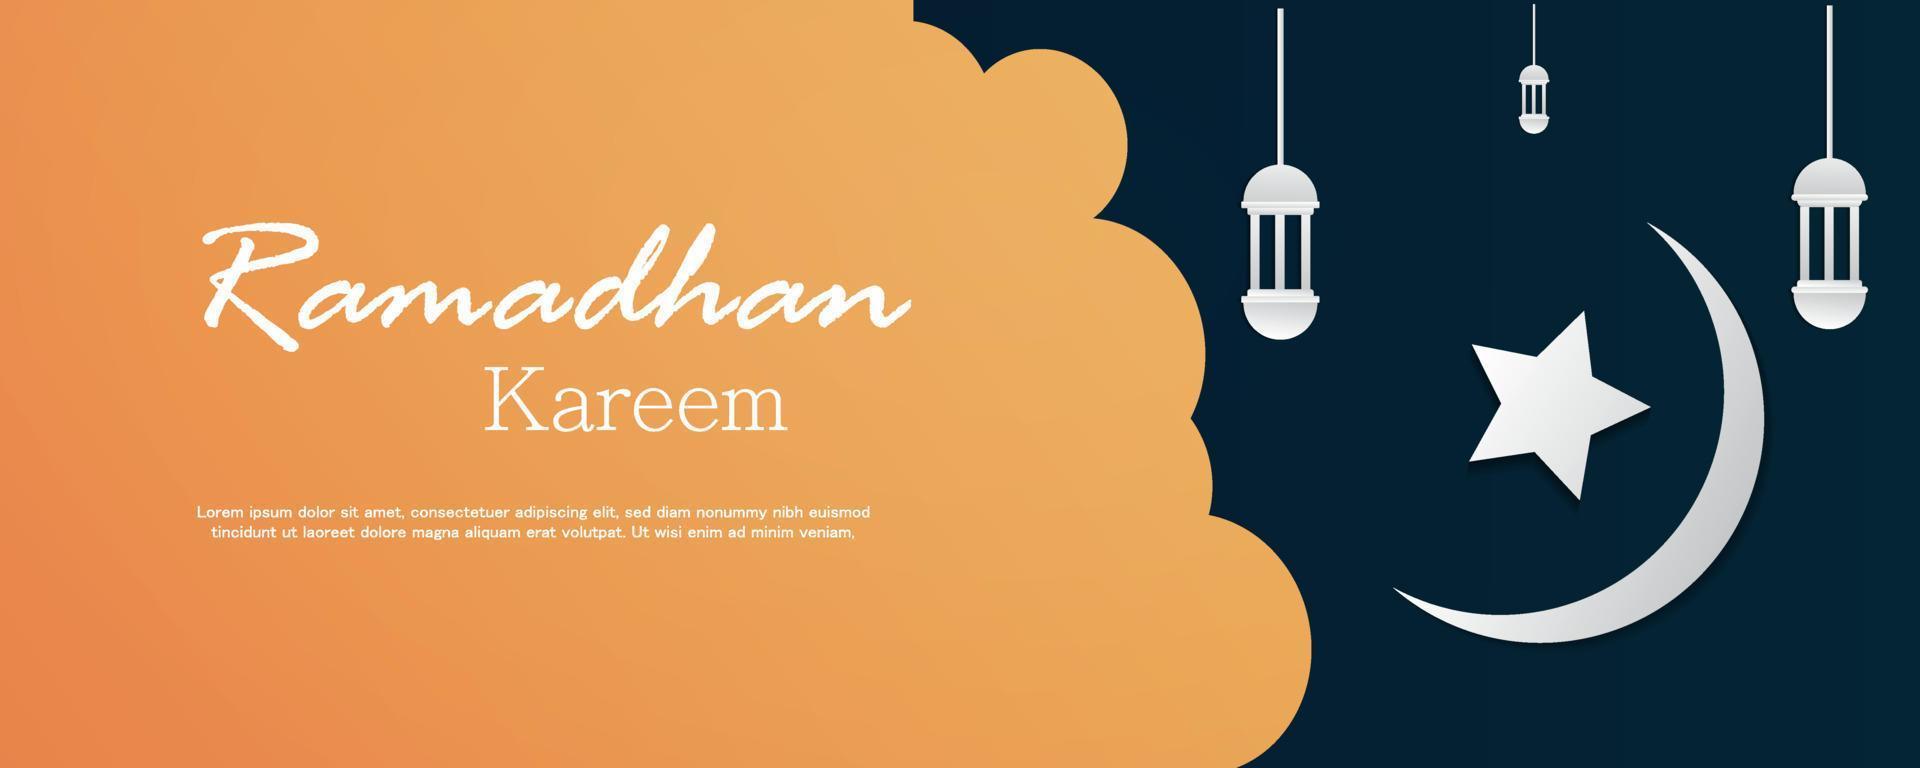 modelo de banner horizontal ramadhan kareem vetor